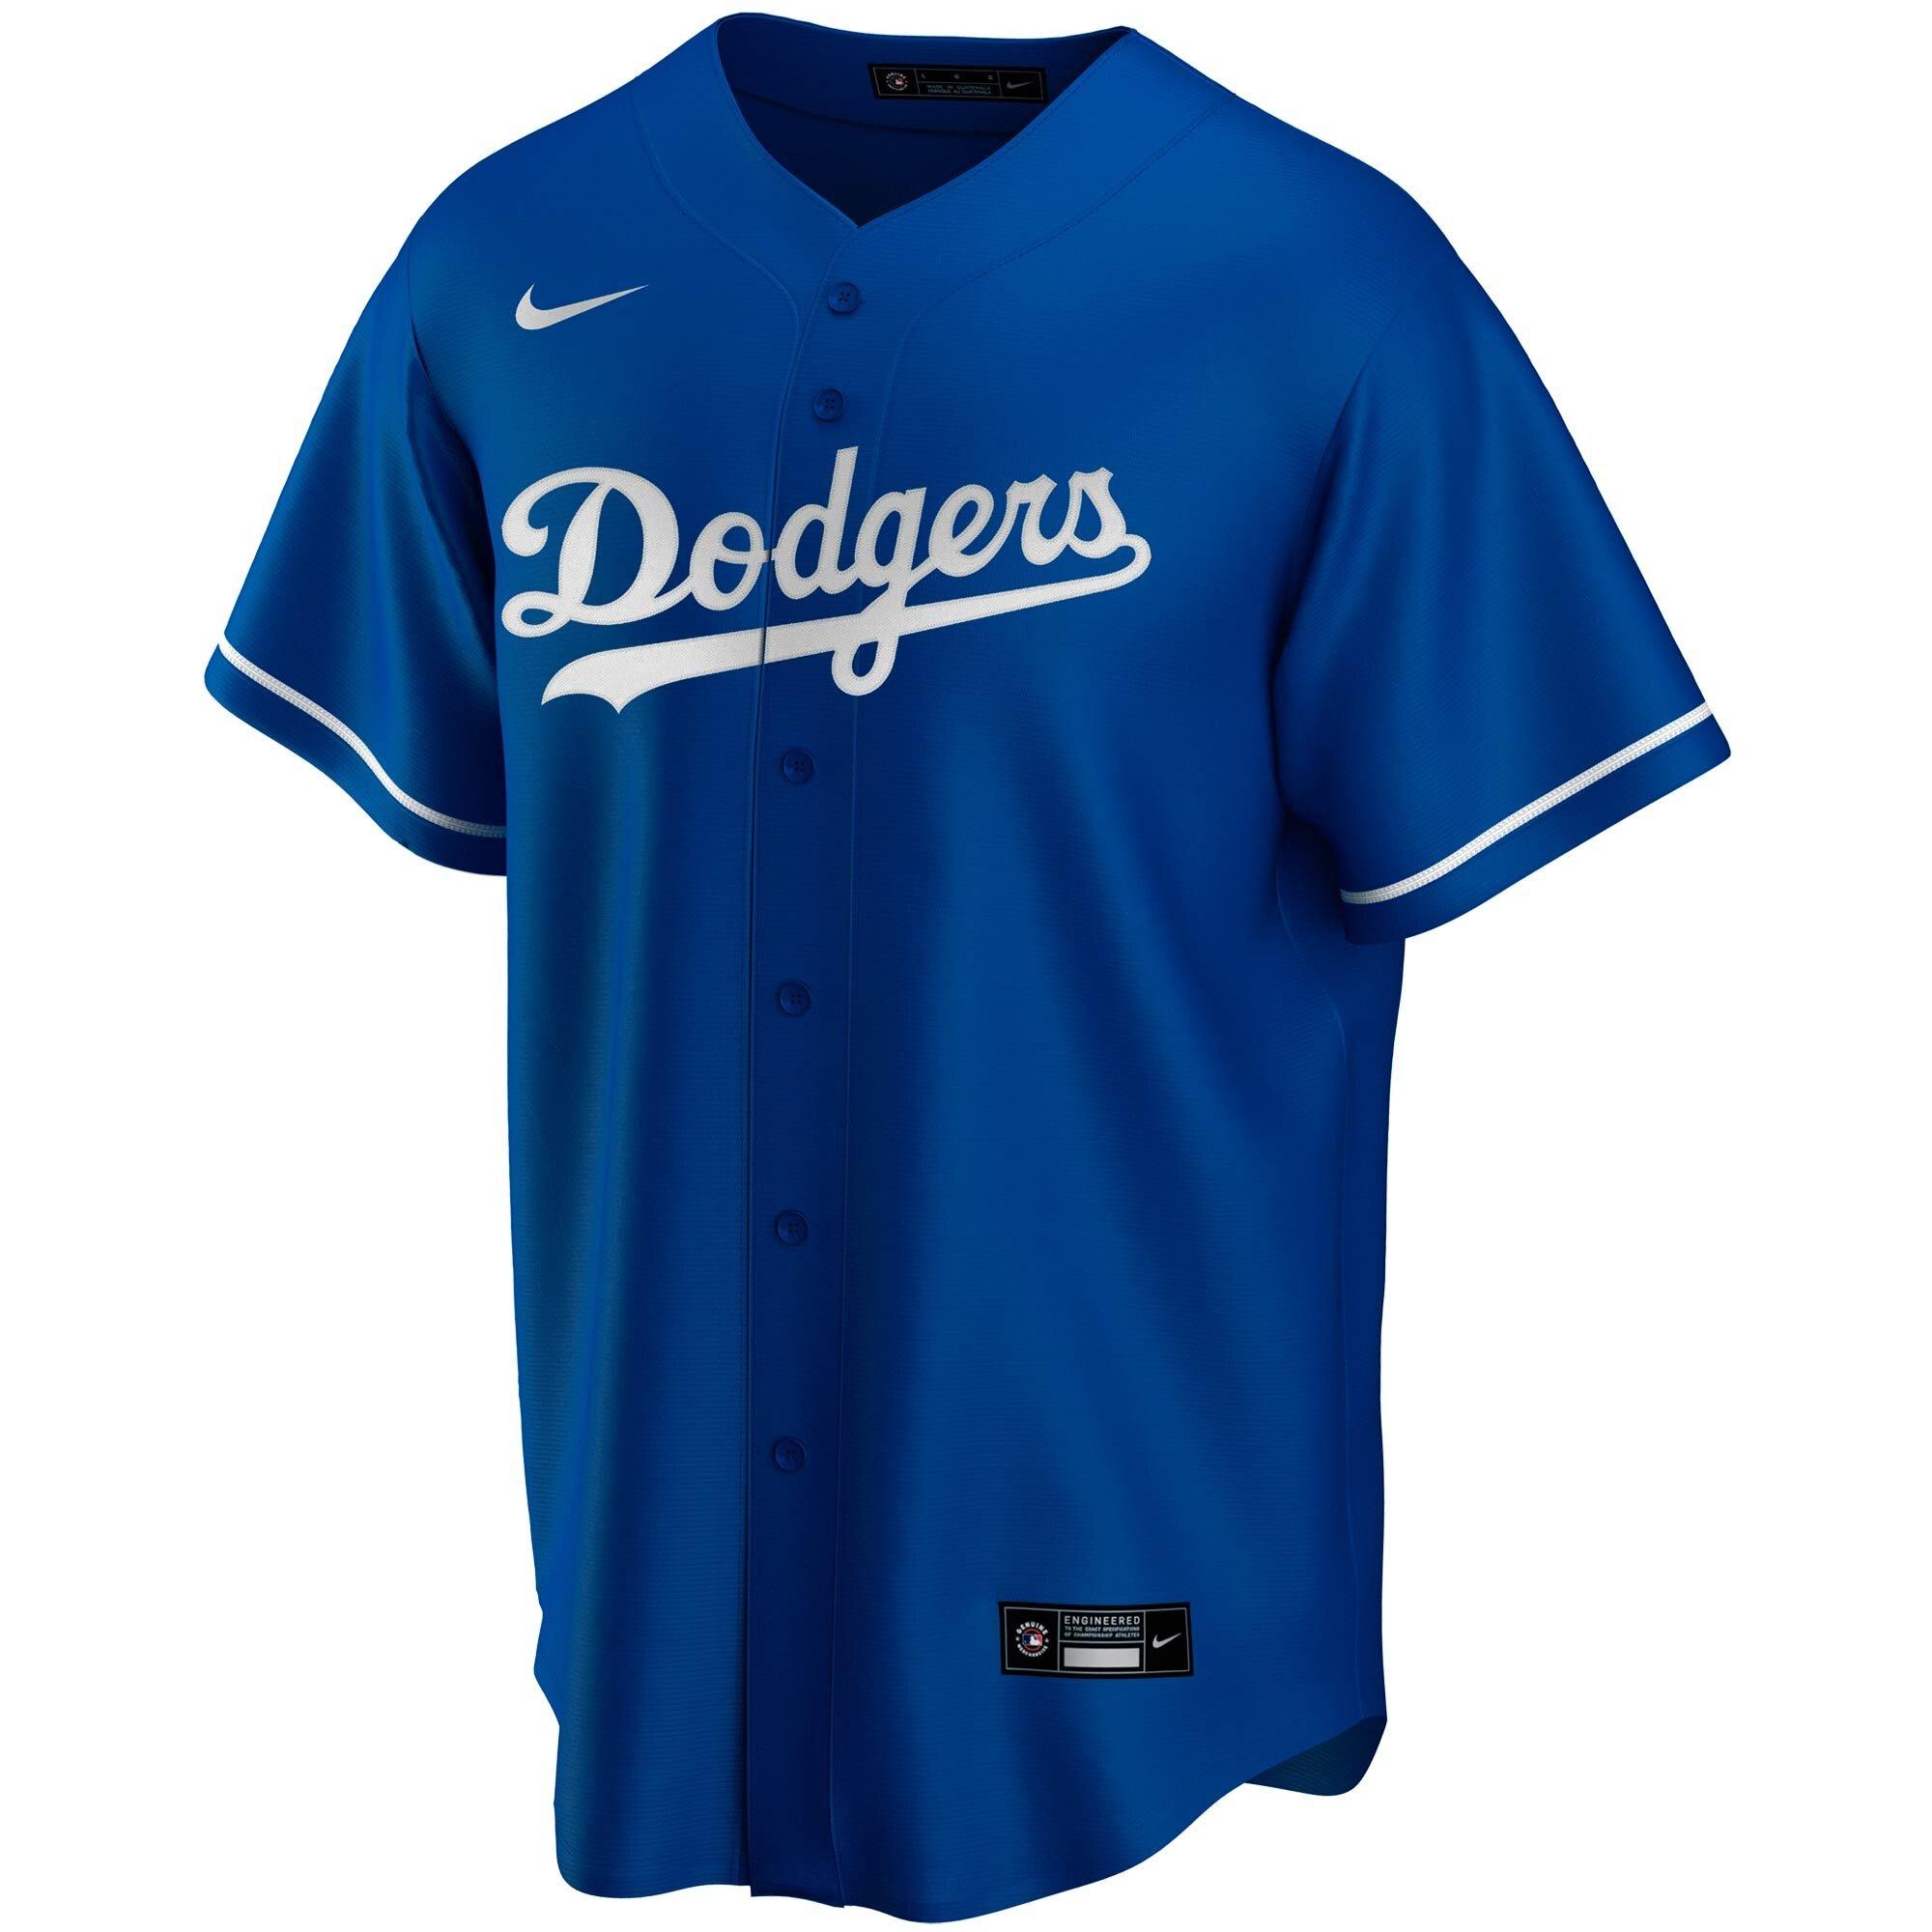 Dodgers kids' compression sleeve 